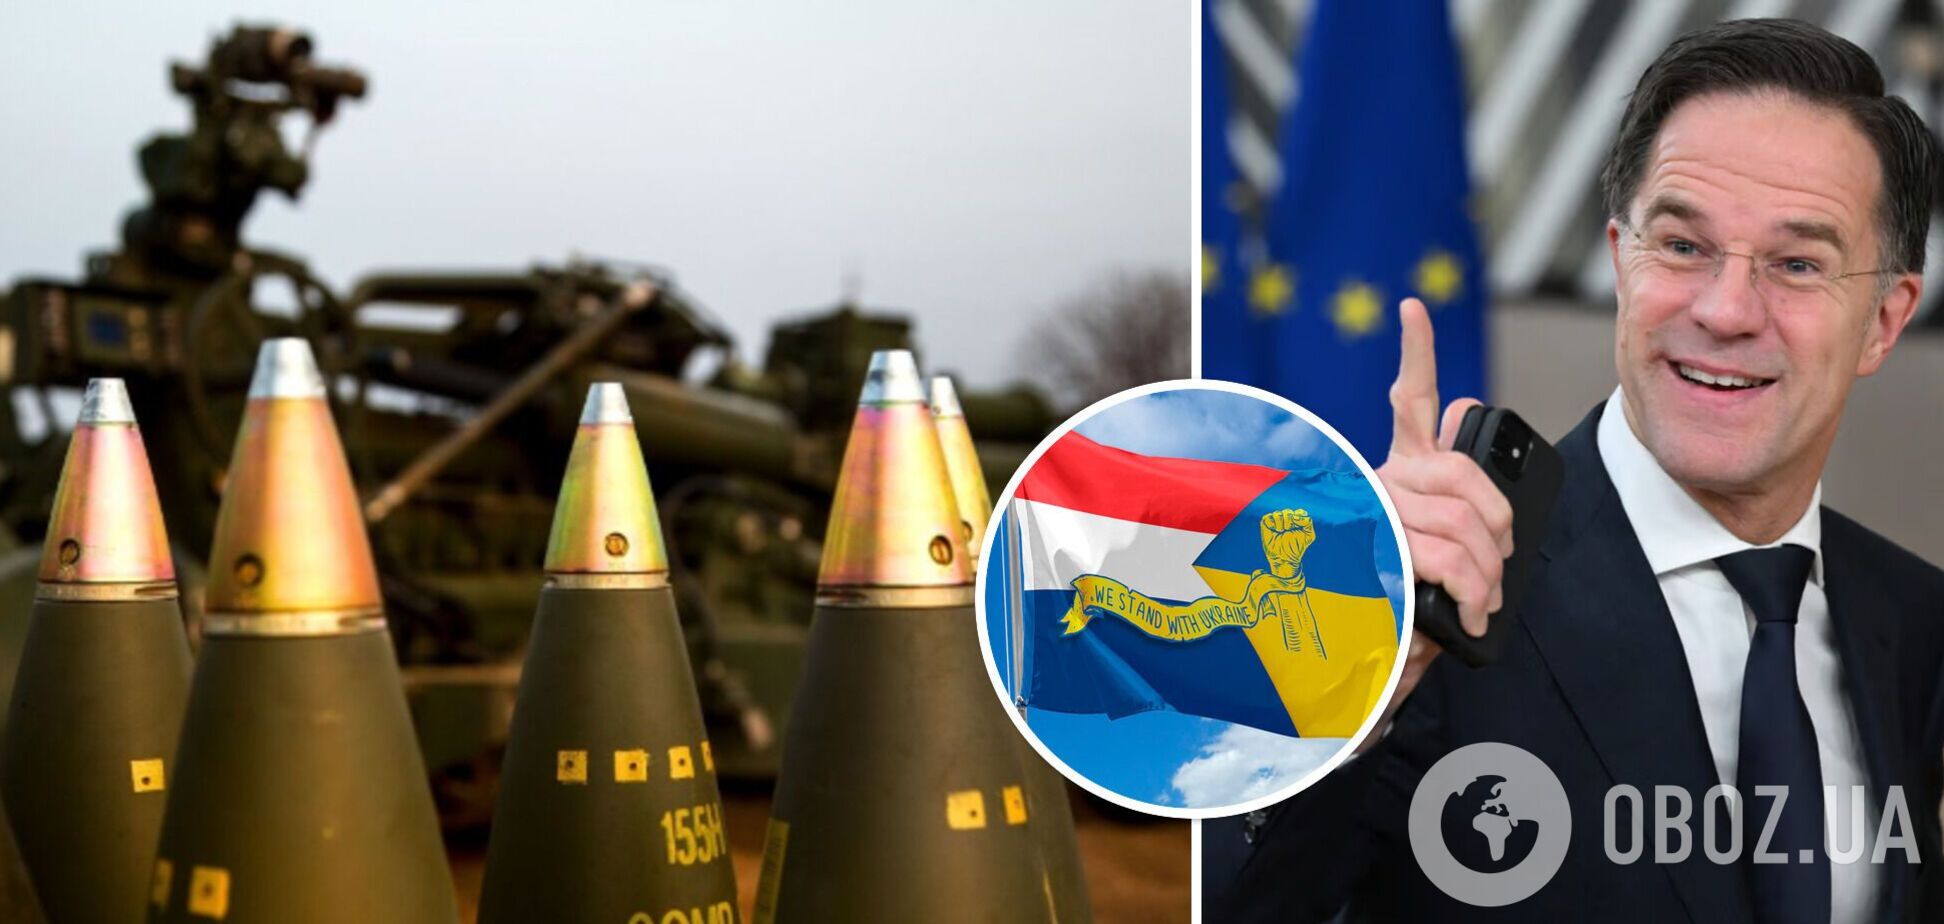 Нидерланды выделят €100 млн на закупку боеприпасов для Украины за пределами ЕС: что известно